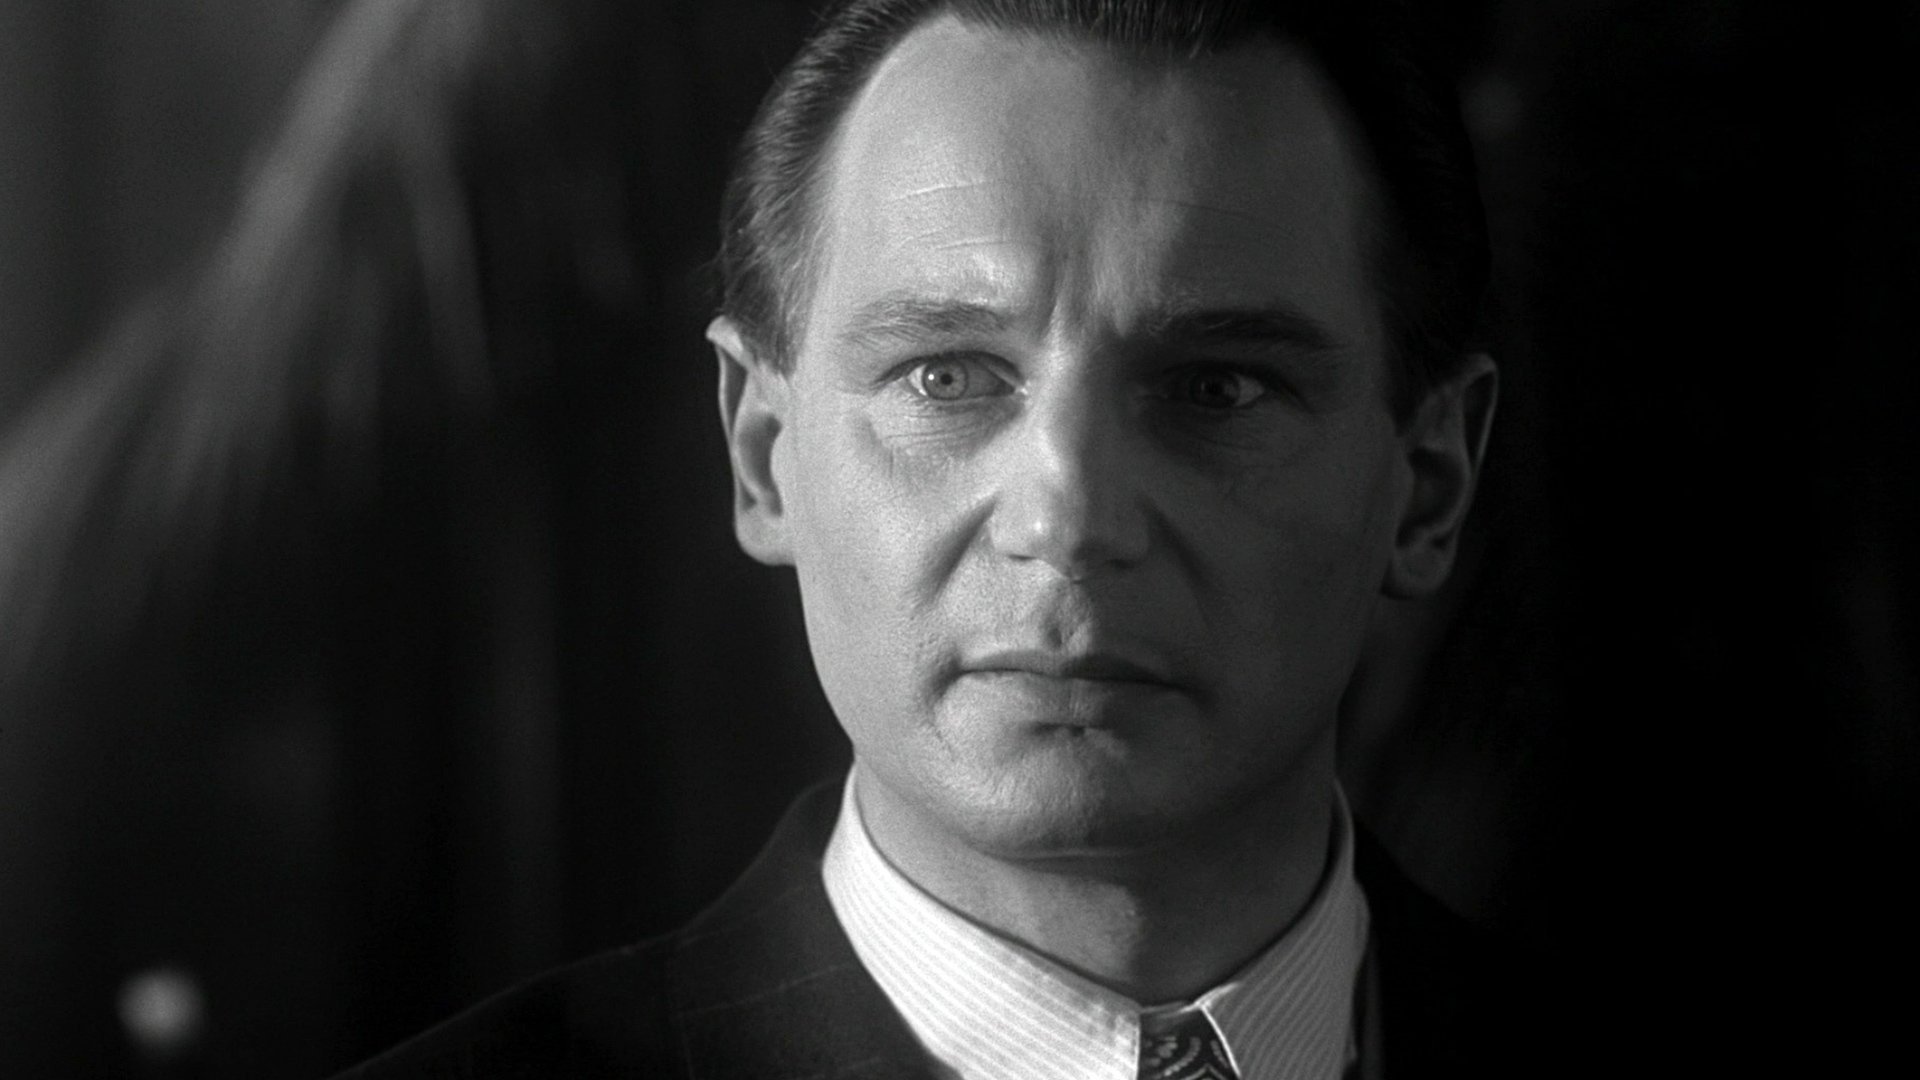 La Liste de Schindler : pourquoi le film est-il en noir et blanc ?